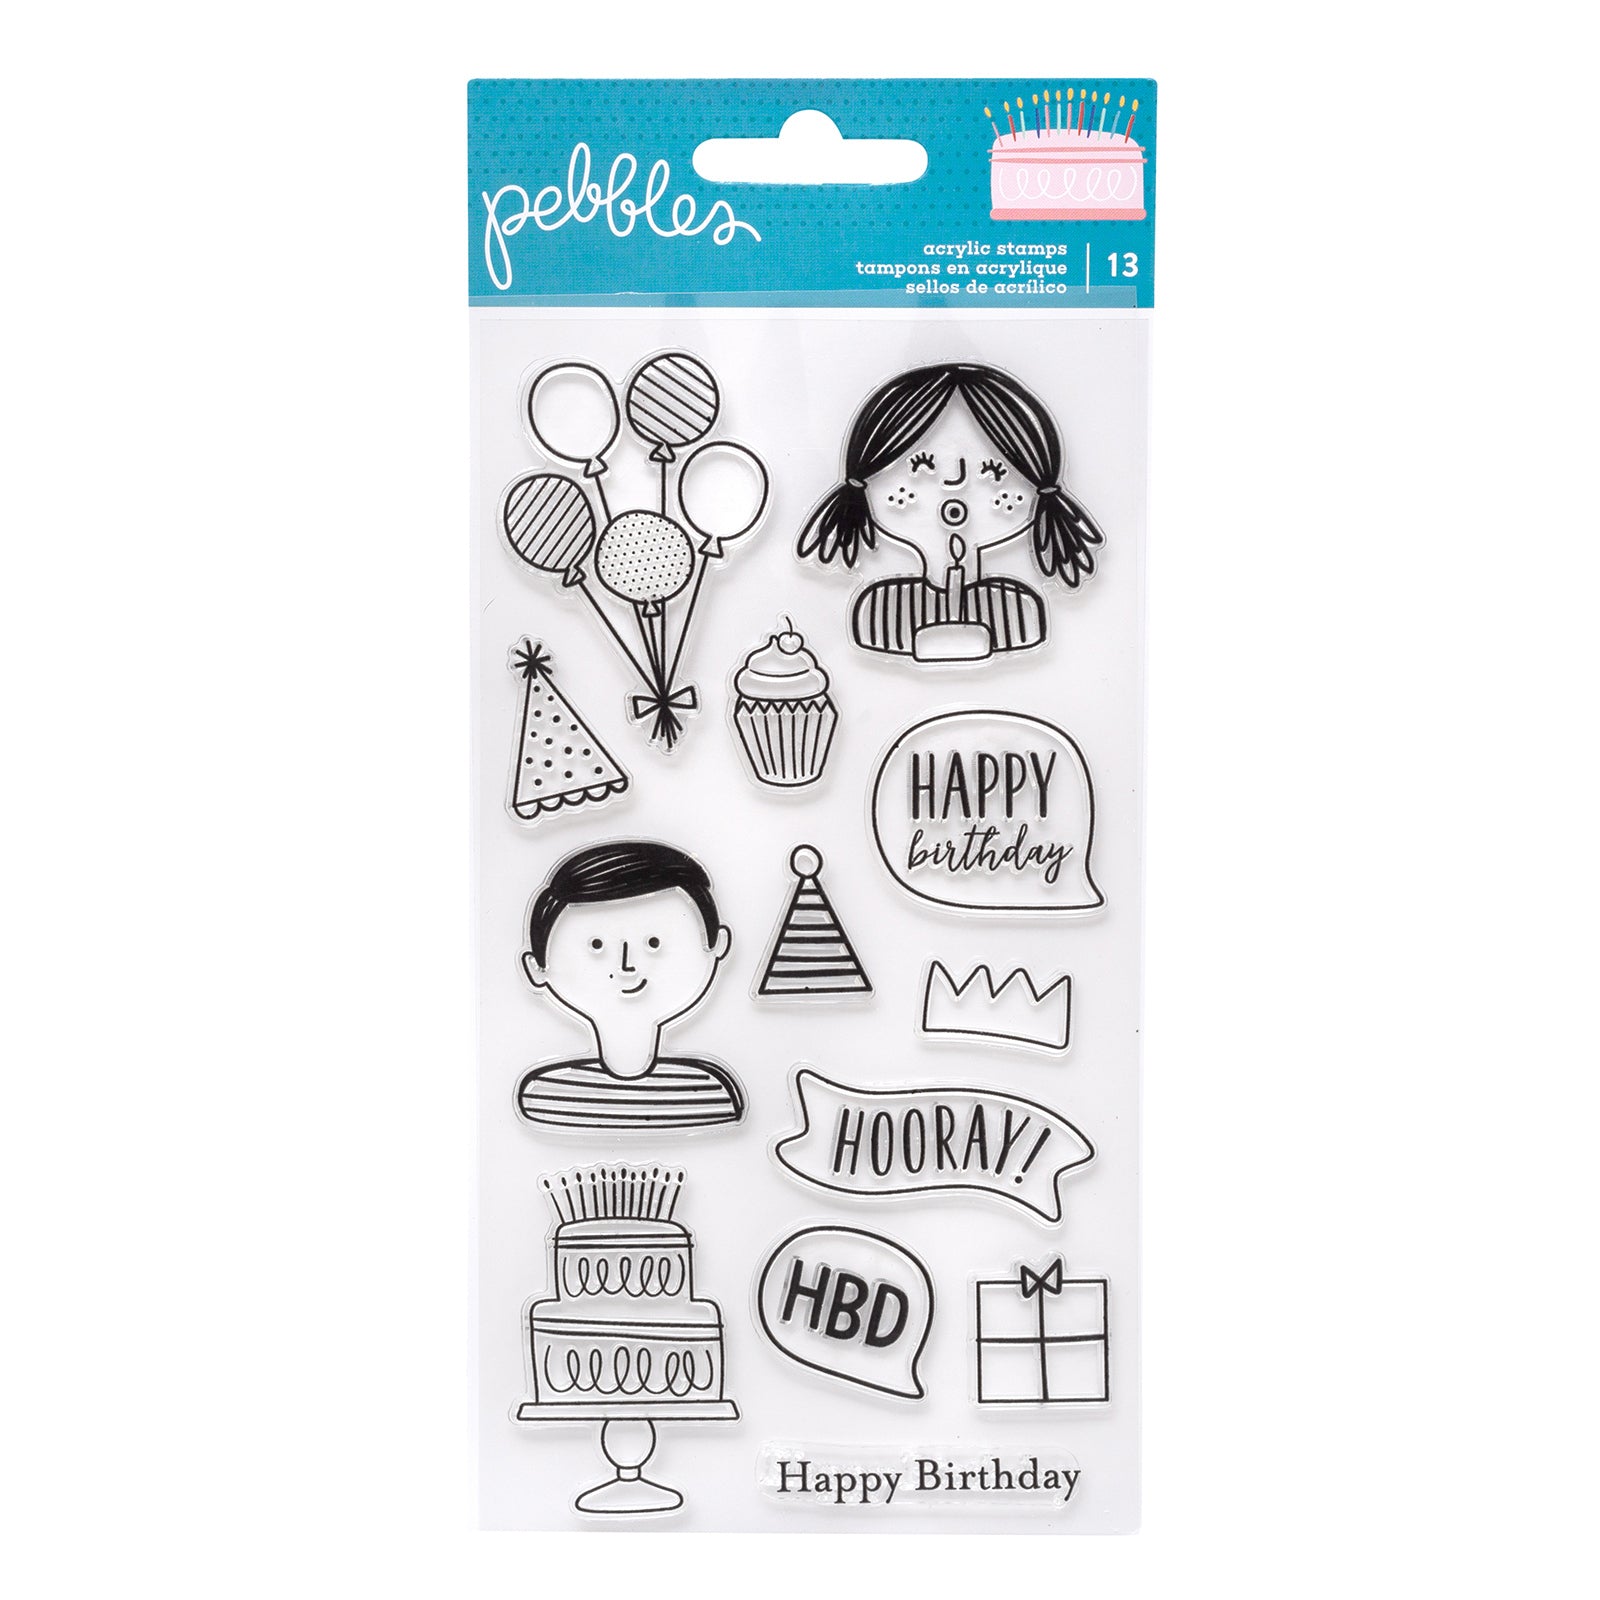 Happy Cake Day Stamps / Sellos de Cumpleaños Feliz